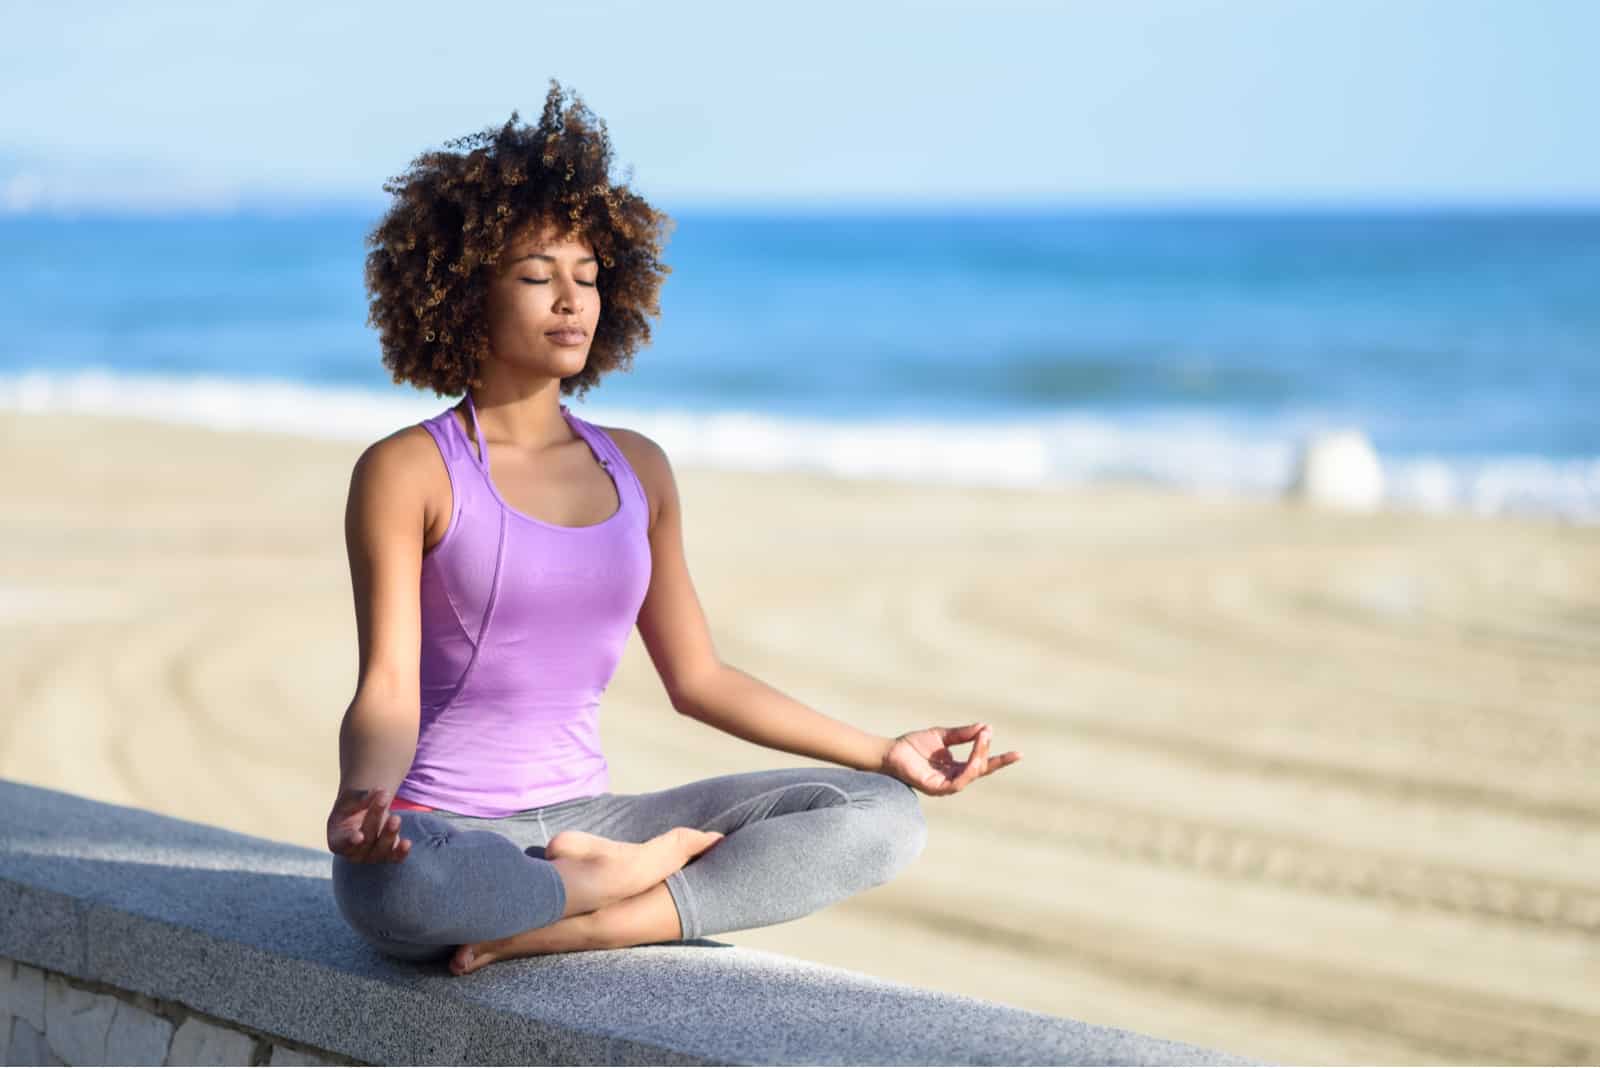 Femme noire, coiffure afro, faisant du yoga asana sur la plage avec les yeux fermés